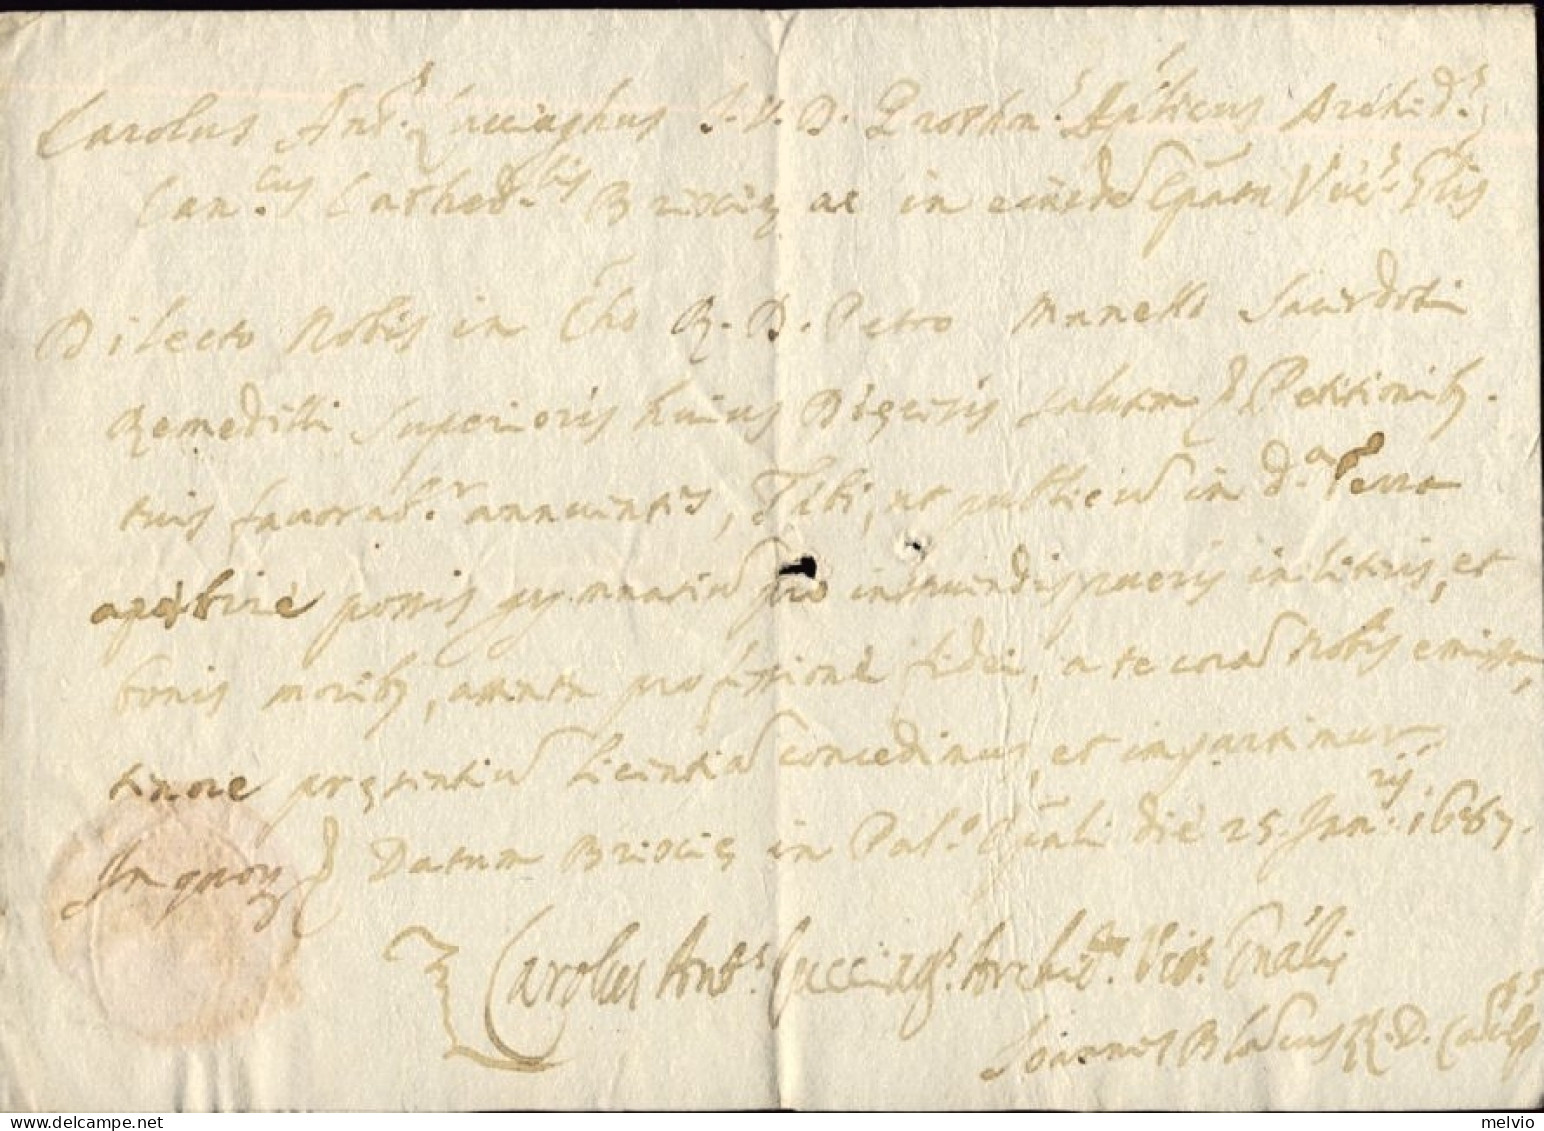 1687-Brescia 25 Gennaio Lettera Con Sigillo Di Carlo Antonio Luzzago Vicario Ves - Historische Dokumente